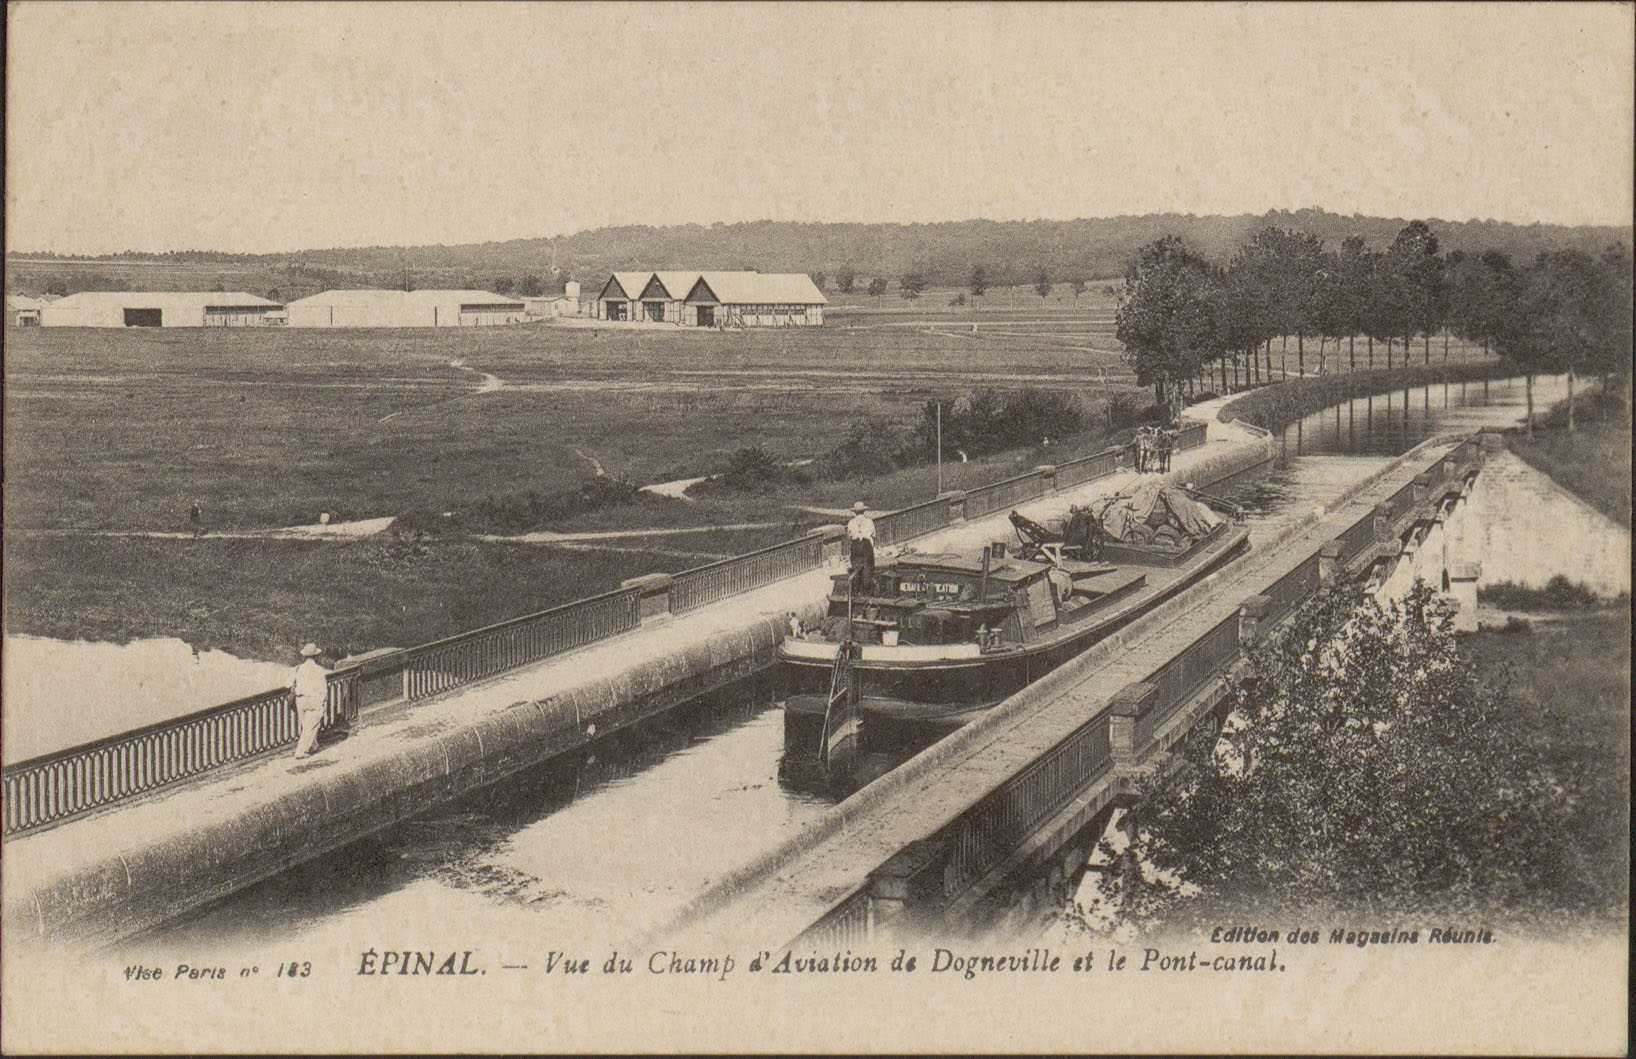 Contenu du Épinal, Vue du Champ d'Aviation de Dogneville et le Pont-Canal